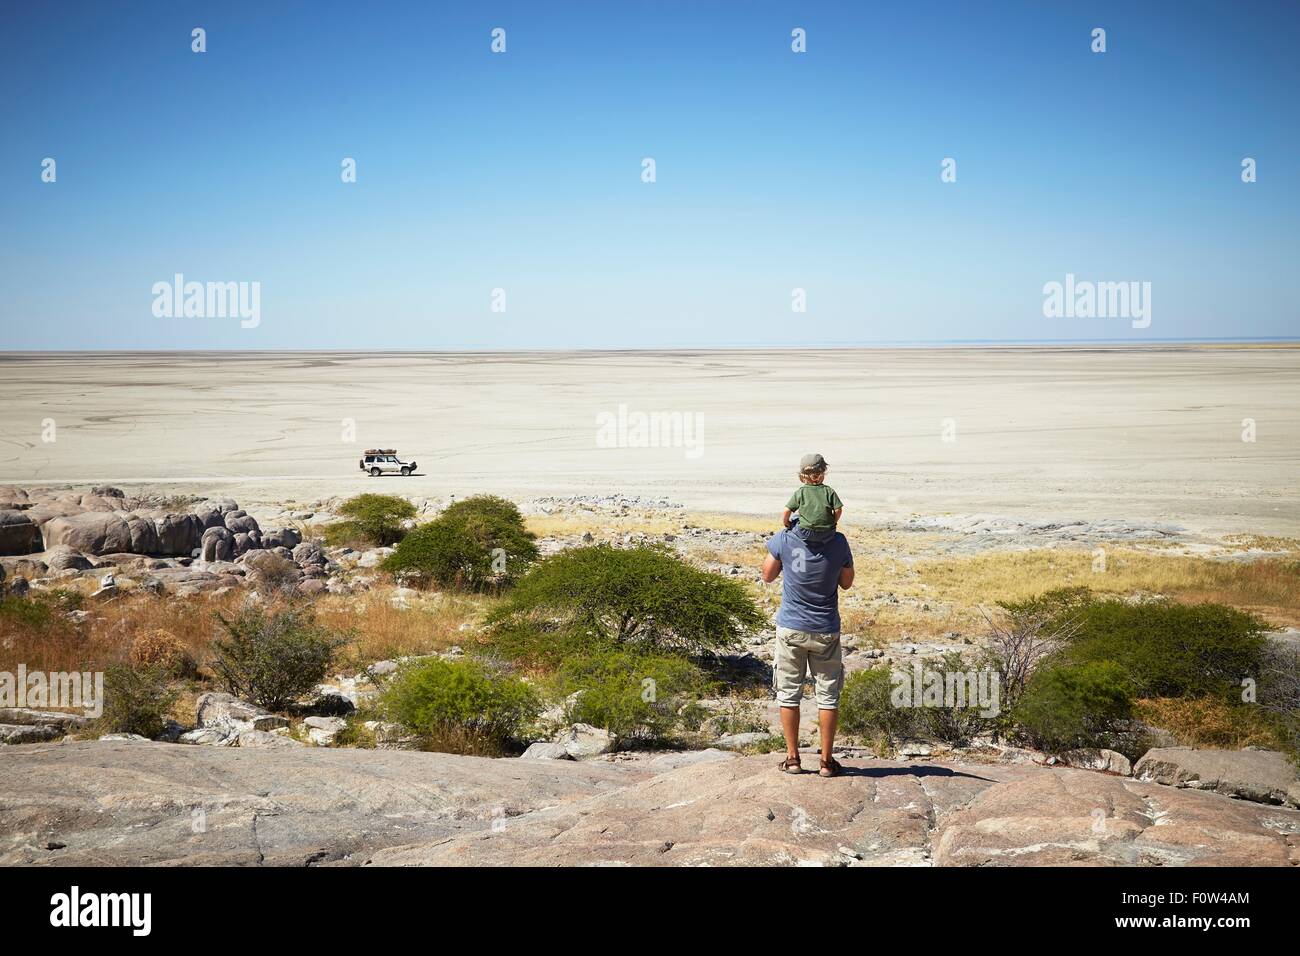 Father and son enjoying view, Kubu Island, Makgadikgadi Pan, Botswana, Africa Stock Photo